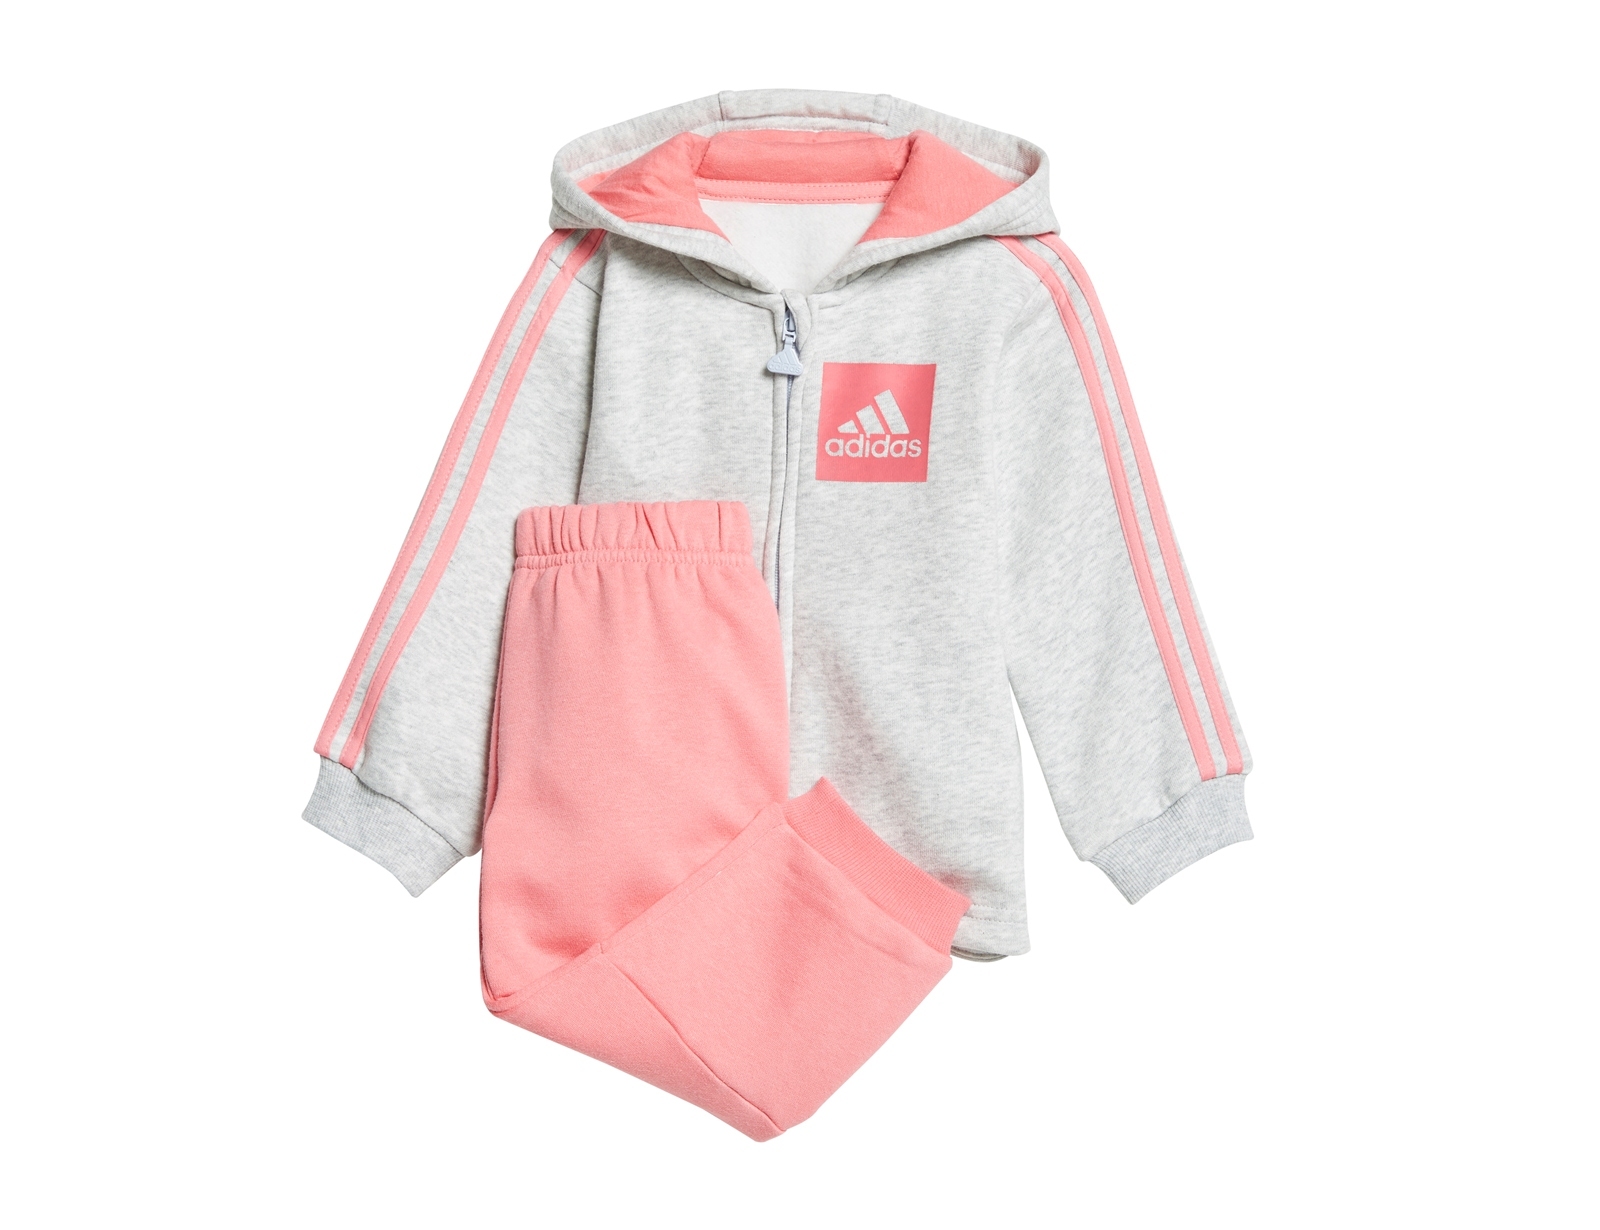 Adidas Trainingsanzug für Babys und Kleinkinder